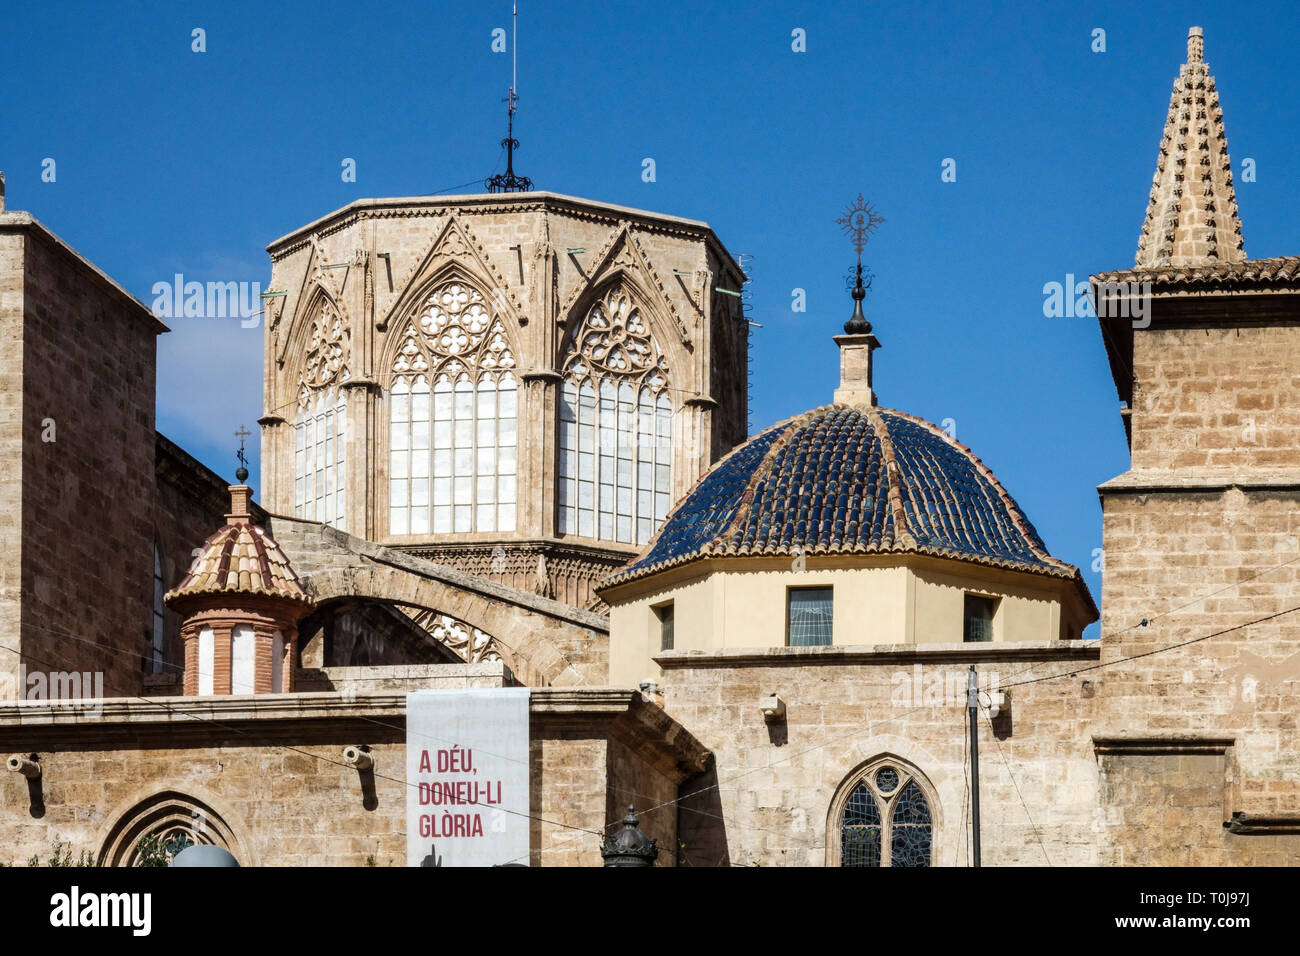 Valence Espagne bâtiment de la ville du XIIIe siècle Cathédrale de Valence Tour carrelée Dôme centre historique Ciutat Vella Banque D'Images